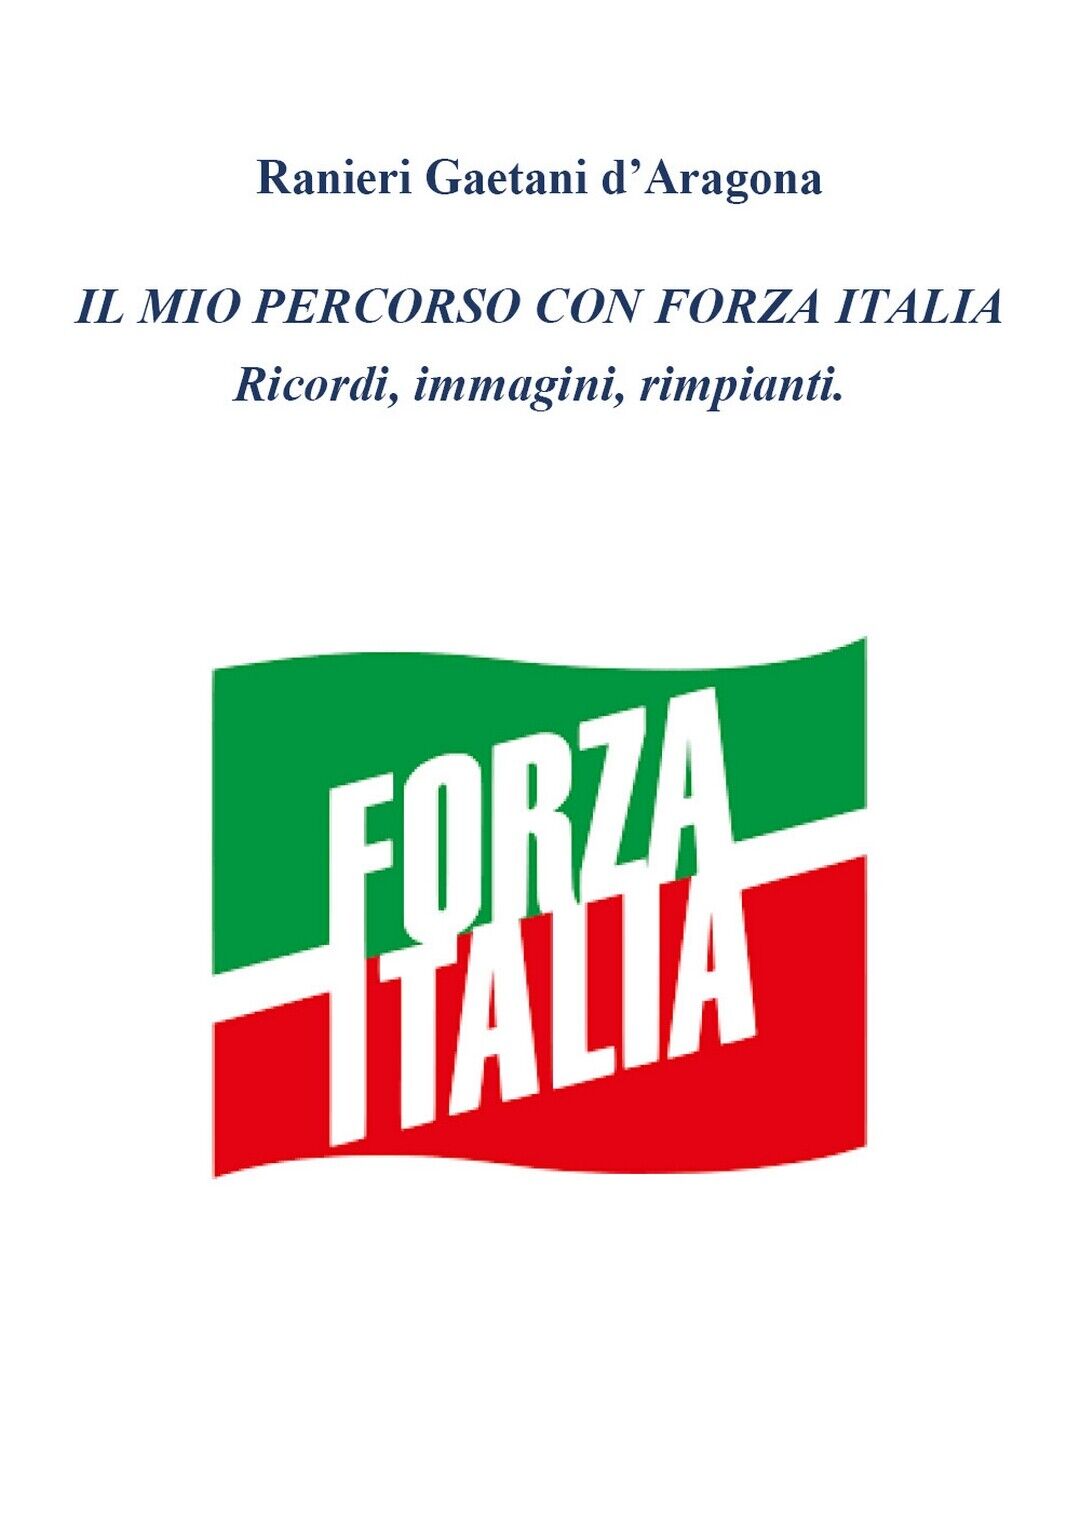 Il mio percorso in Forza Italia, Ranieri Gaetani d'Aragona,  2020,  Youcanprint